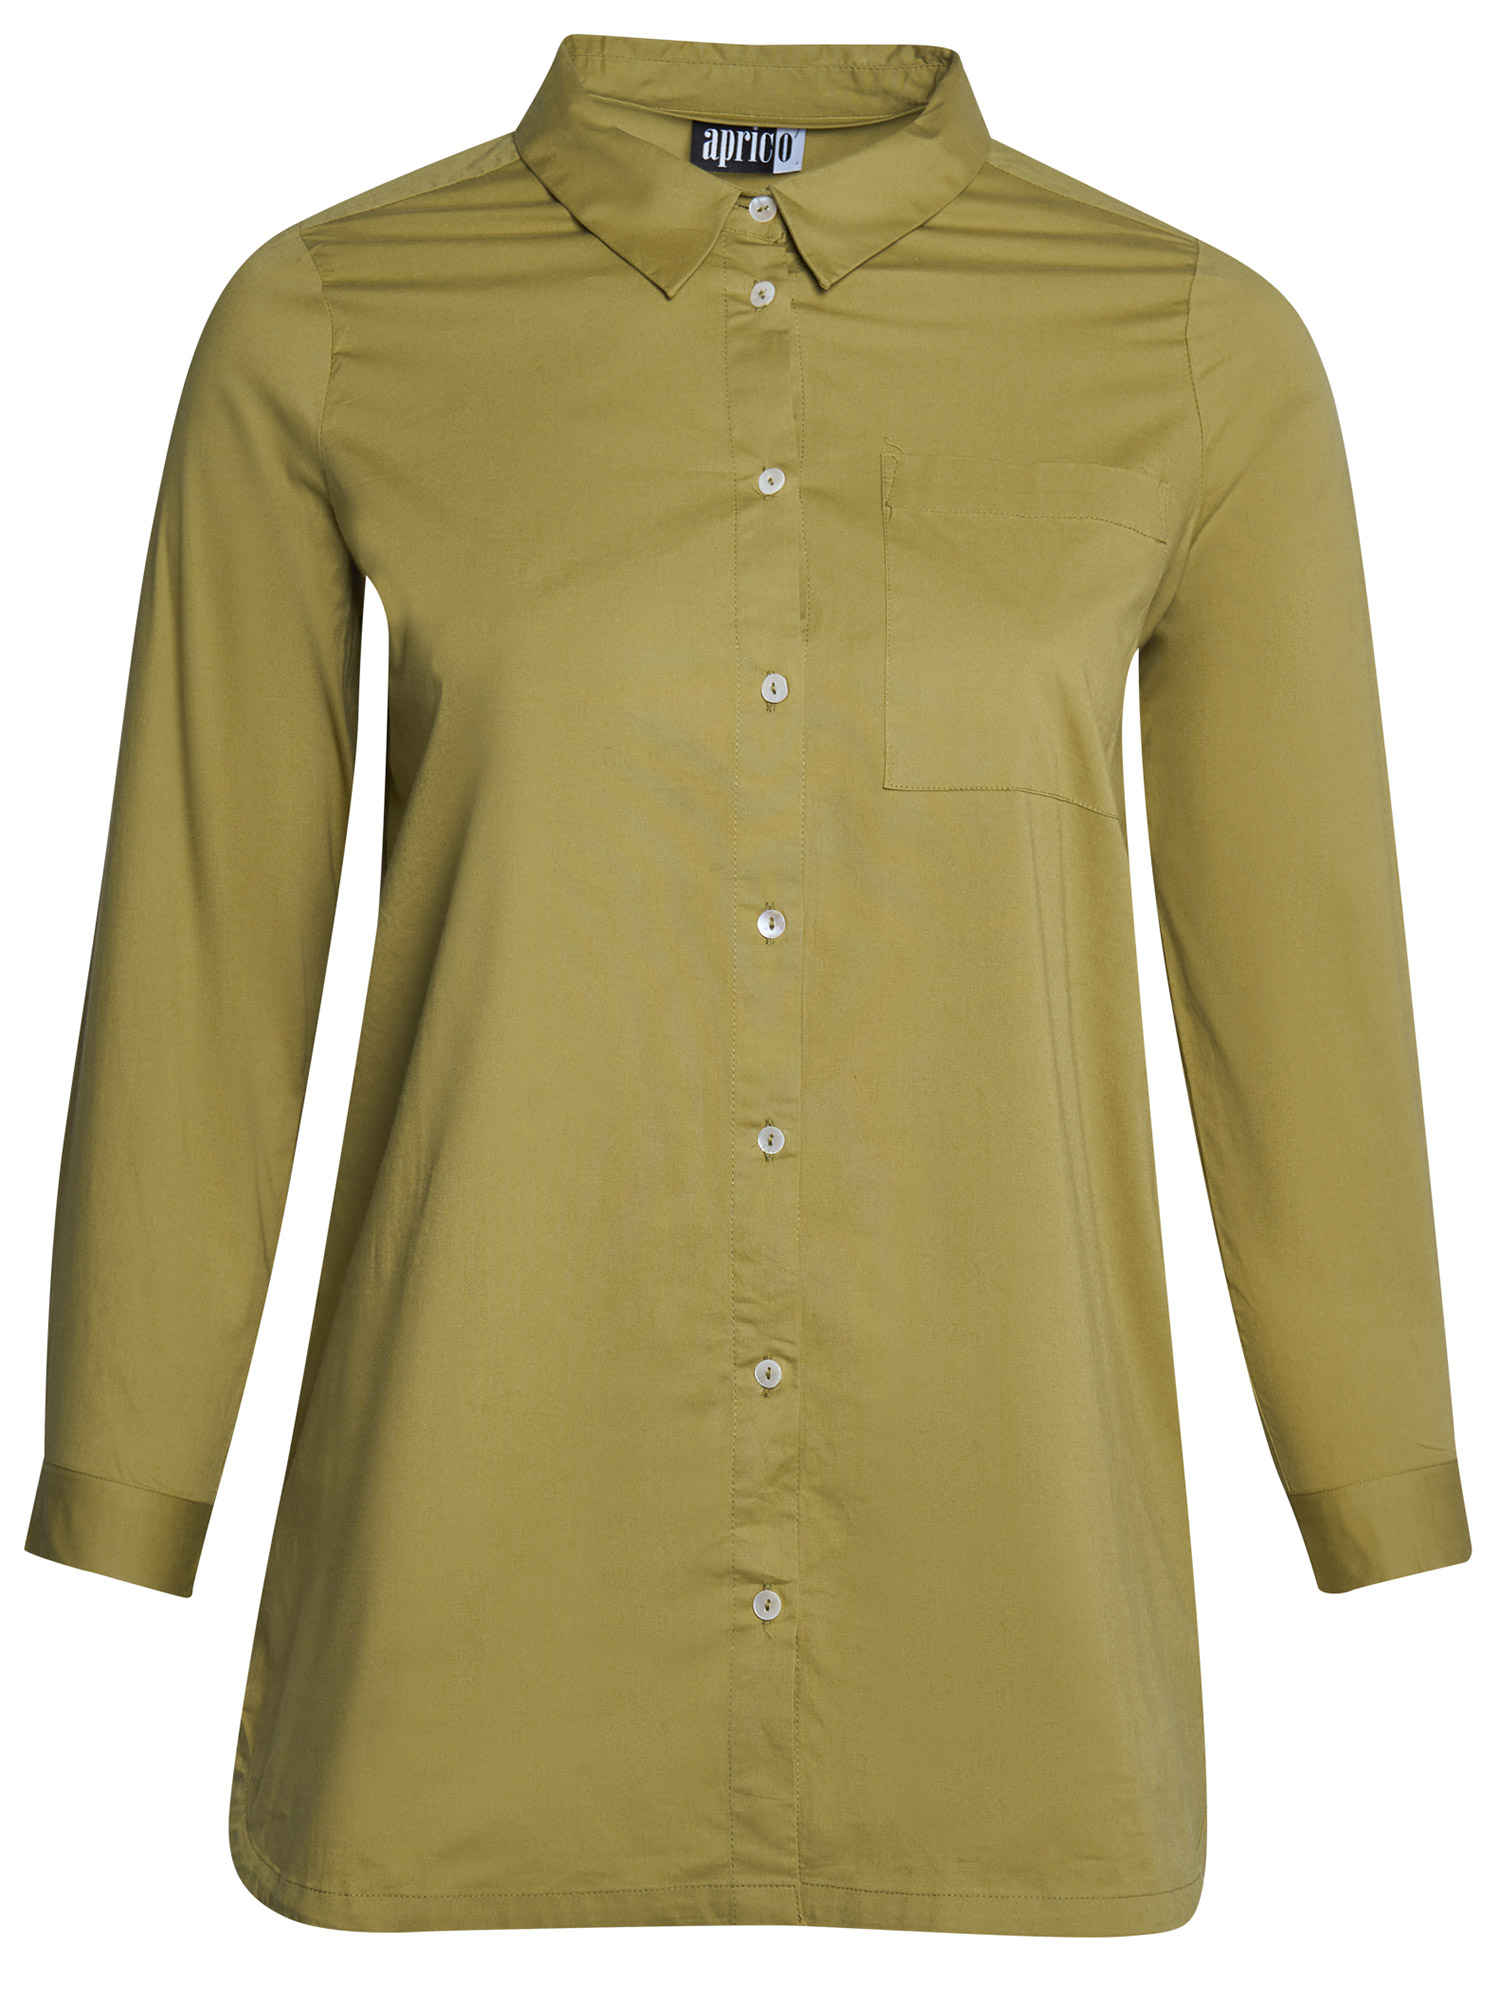 Virginia - Olivgrön bomullsskjorta med stretch fra Aprico